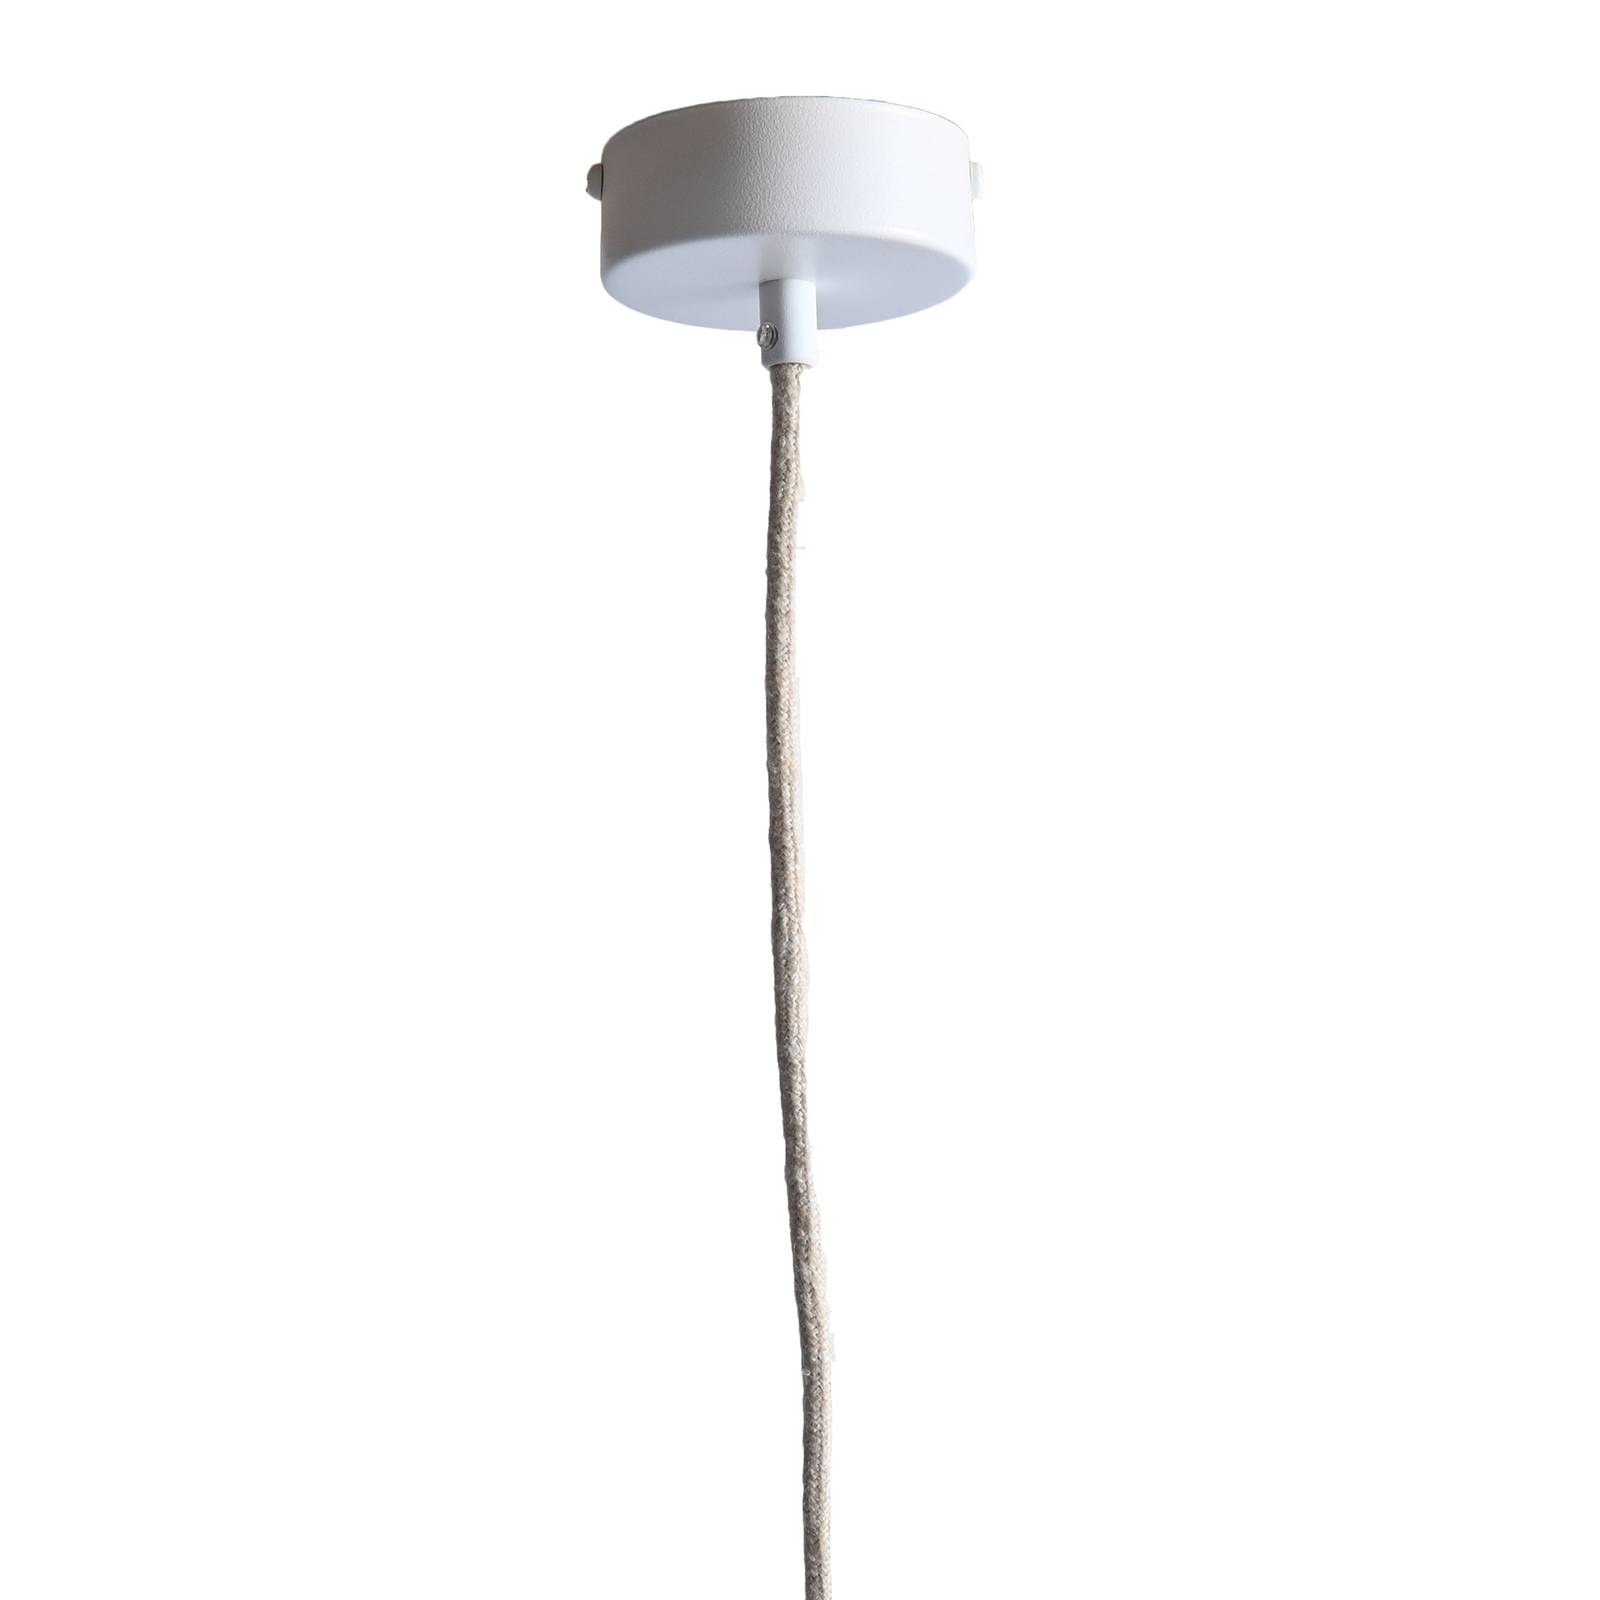 Leuchtnatur nux függő lámpa, nyárfa/fehér